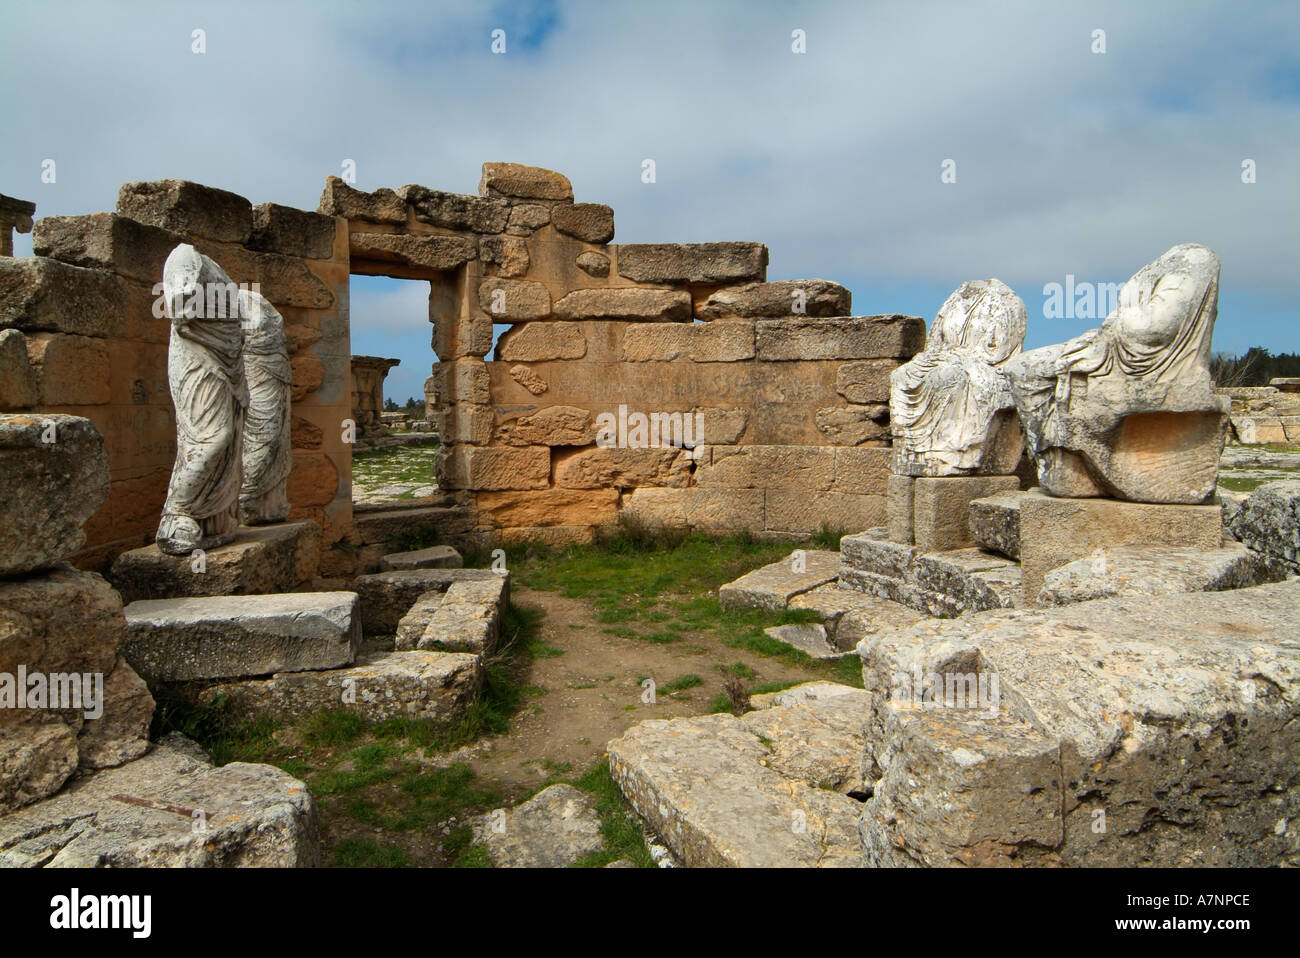 Sanctuaire de Déméter et Koré, Cyrène grec / Roman ruins, Libye Banque D'Images